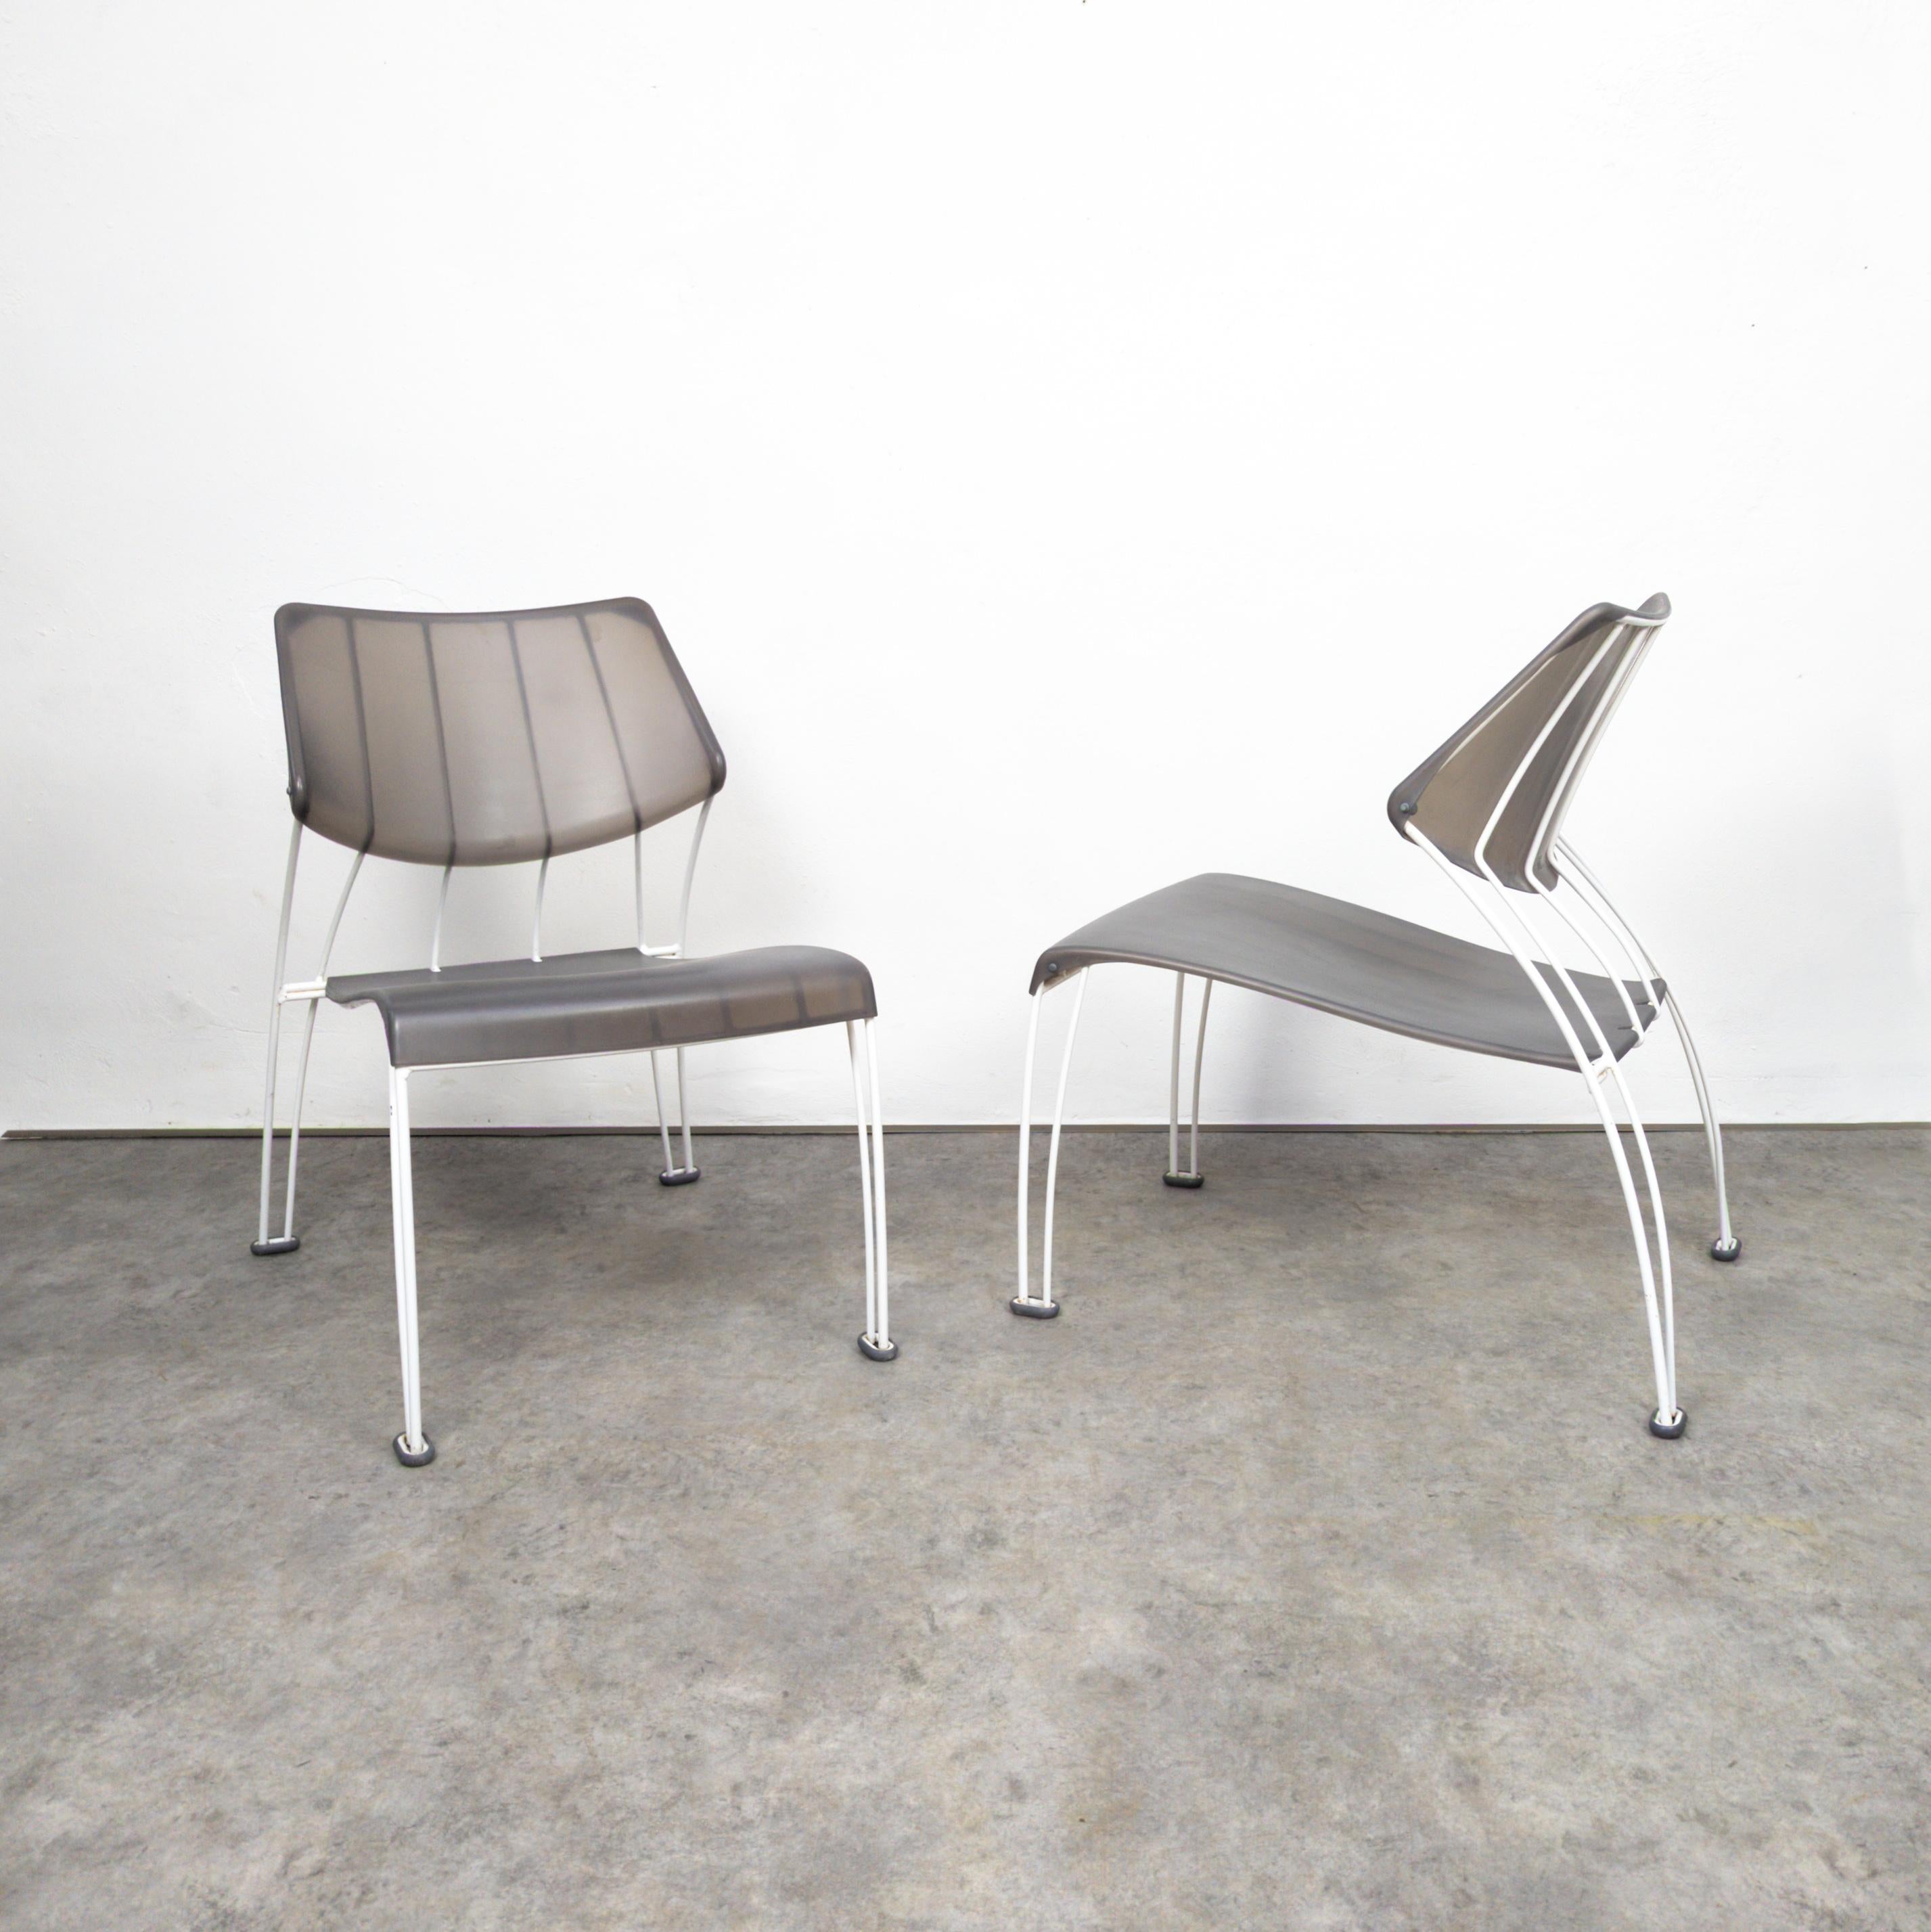 Paire de fantastiques chaises longues postmodernes conçues par Monika Mulder pour Ikea en 1995. Les chaises Ikea PS Hässlö conçues par Monika Mulder sont élégantes et modernes. Ils présentent un design minimaliste aux lignes épurées, ce qui les rend